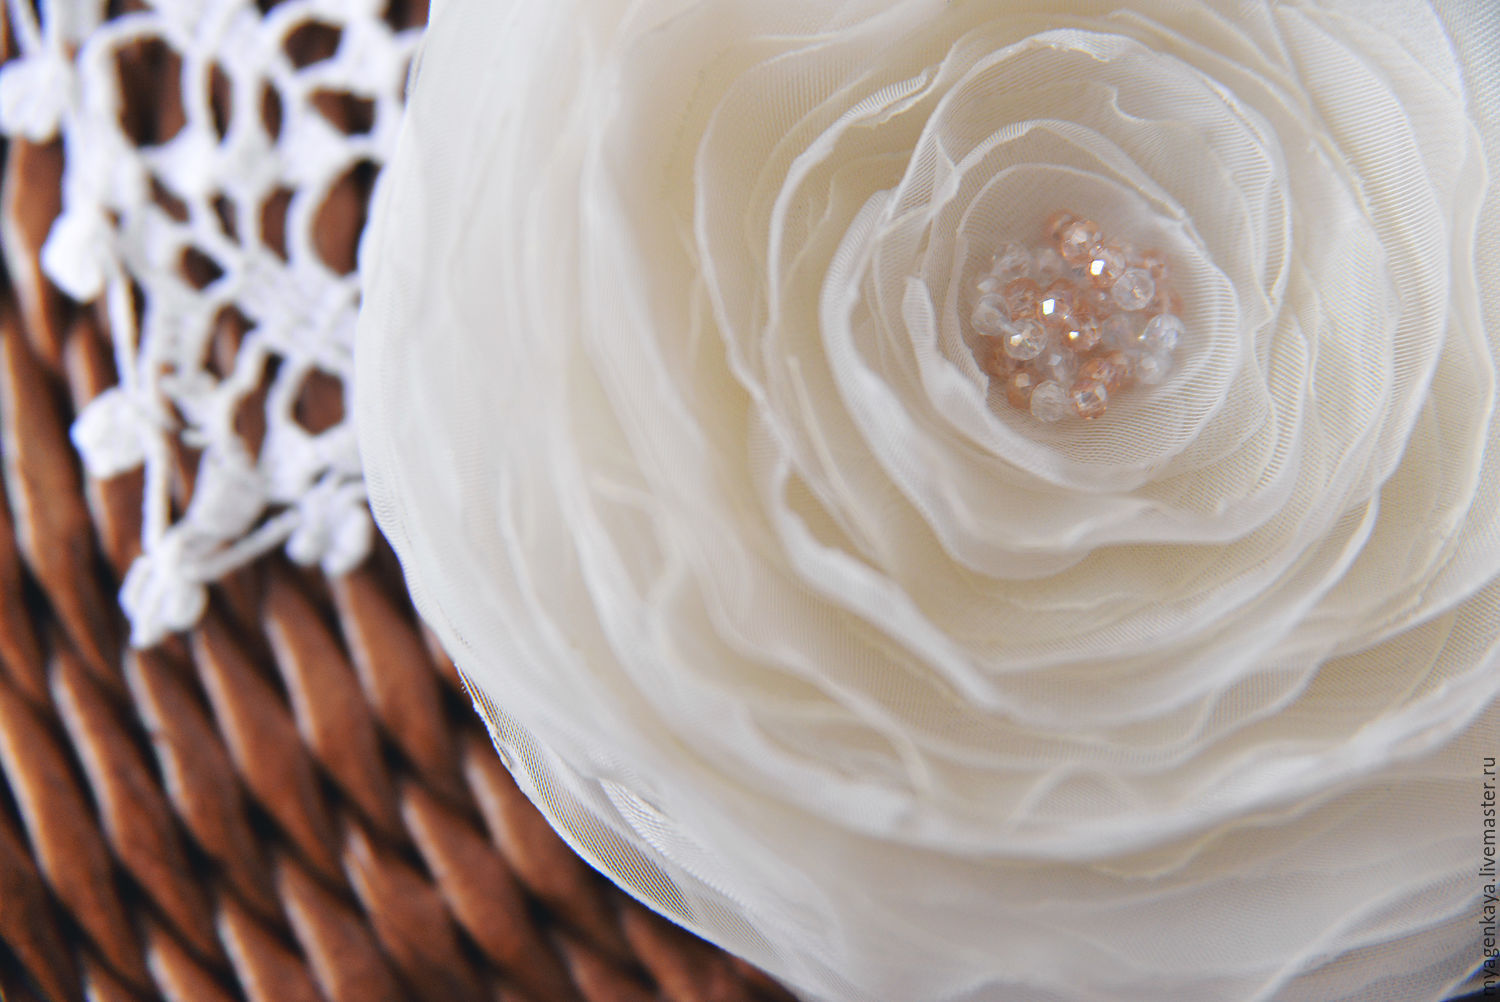 Цветок из органзы: легкое и воздушное украшение для любого случая